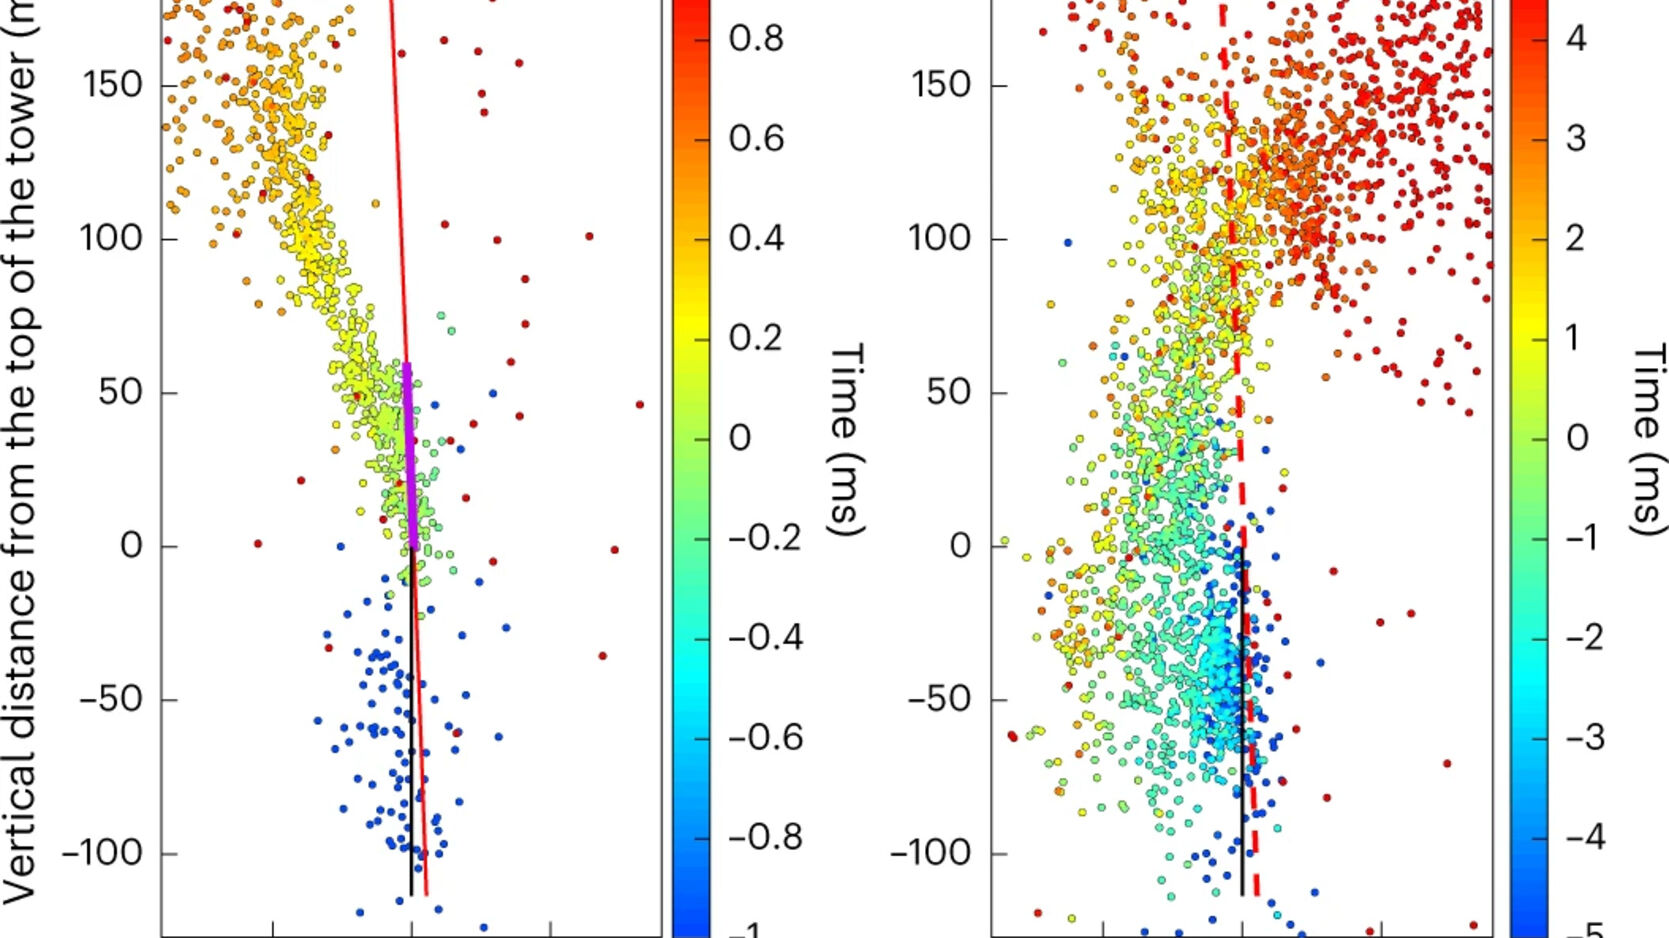 Pikselöögid: üks graafikutest, mis toetab Genfi ülikooli poolt Säntise mäel välgu laseri kõrvalekaldumise uuringut koos andmete, statistika või piltidega (inglise keeles)